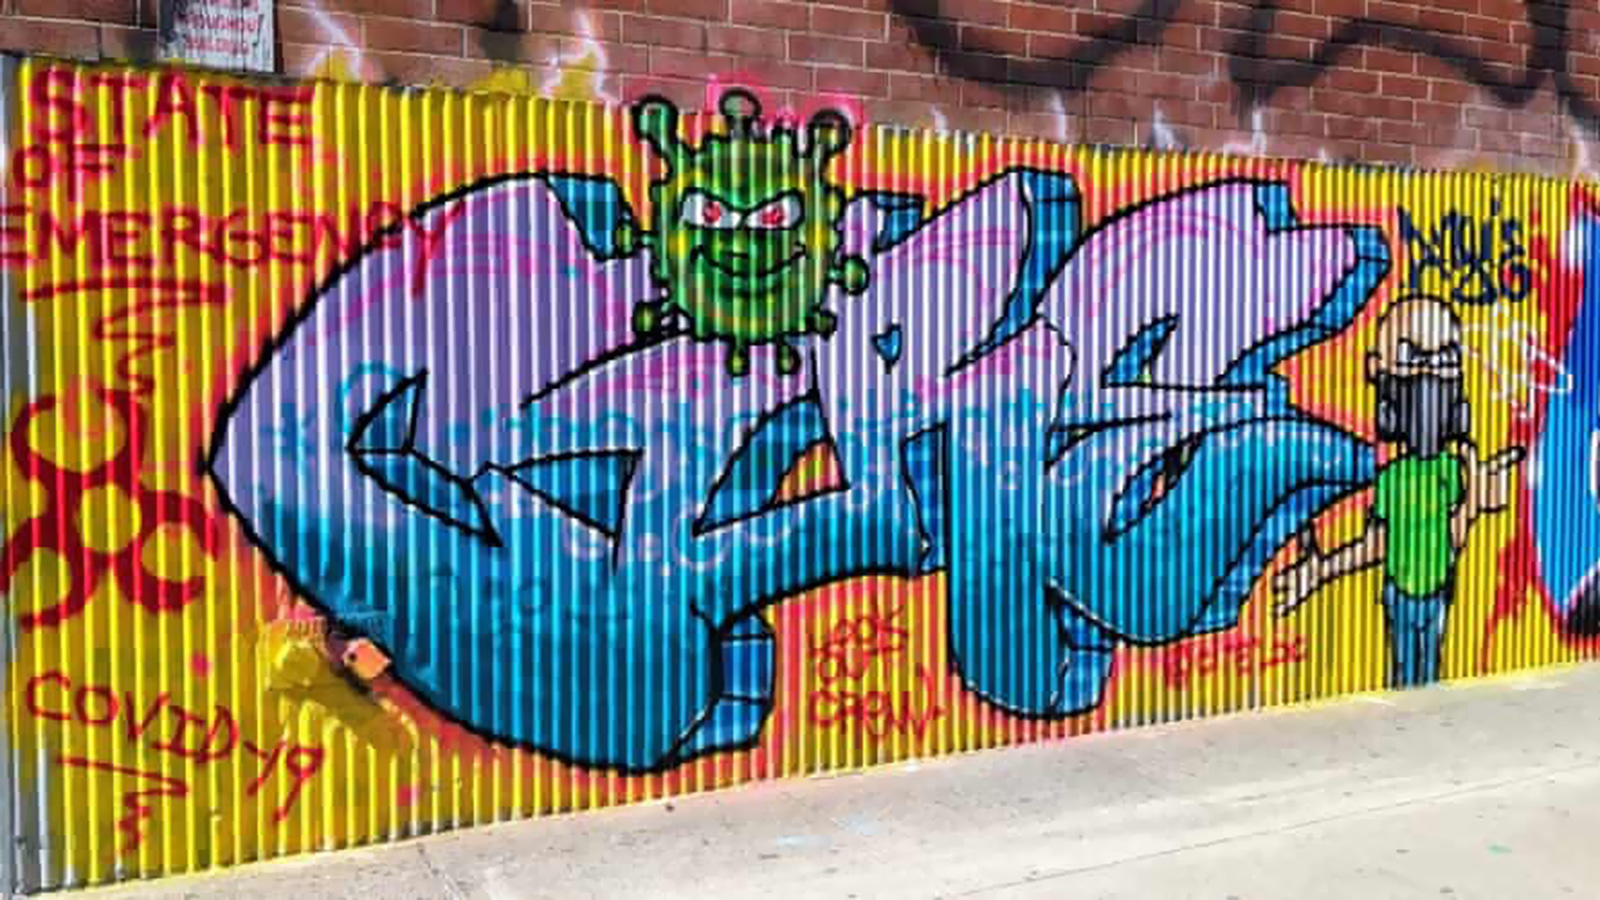 ‪الفنان إريك غوزا رسم لوحة جدارية في زاوية من أحد شوارع برودواي تصور فيروس كورونا المستجد شبيها بالشيطان‬ (مواقع التواصل الاجتماعي)